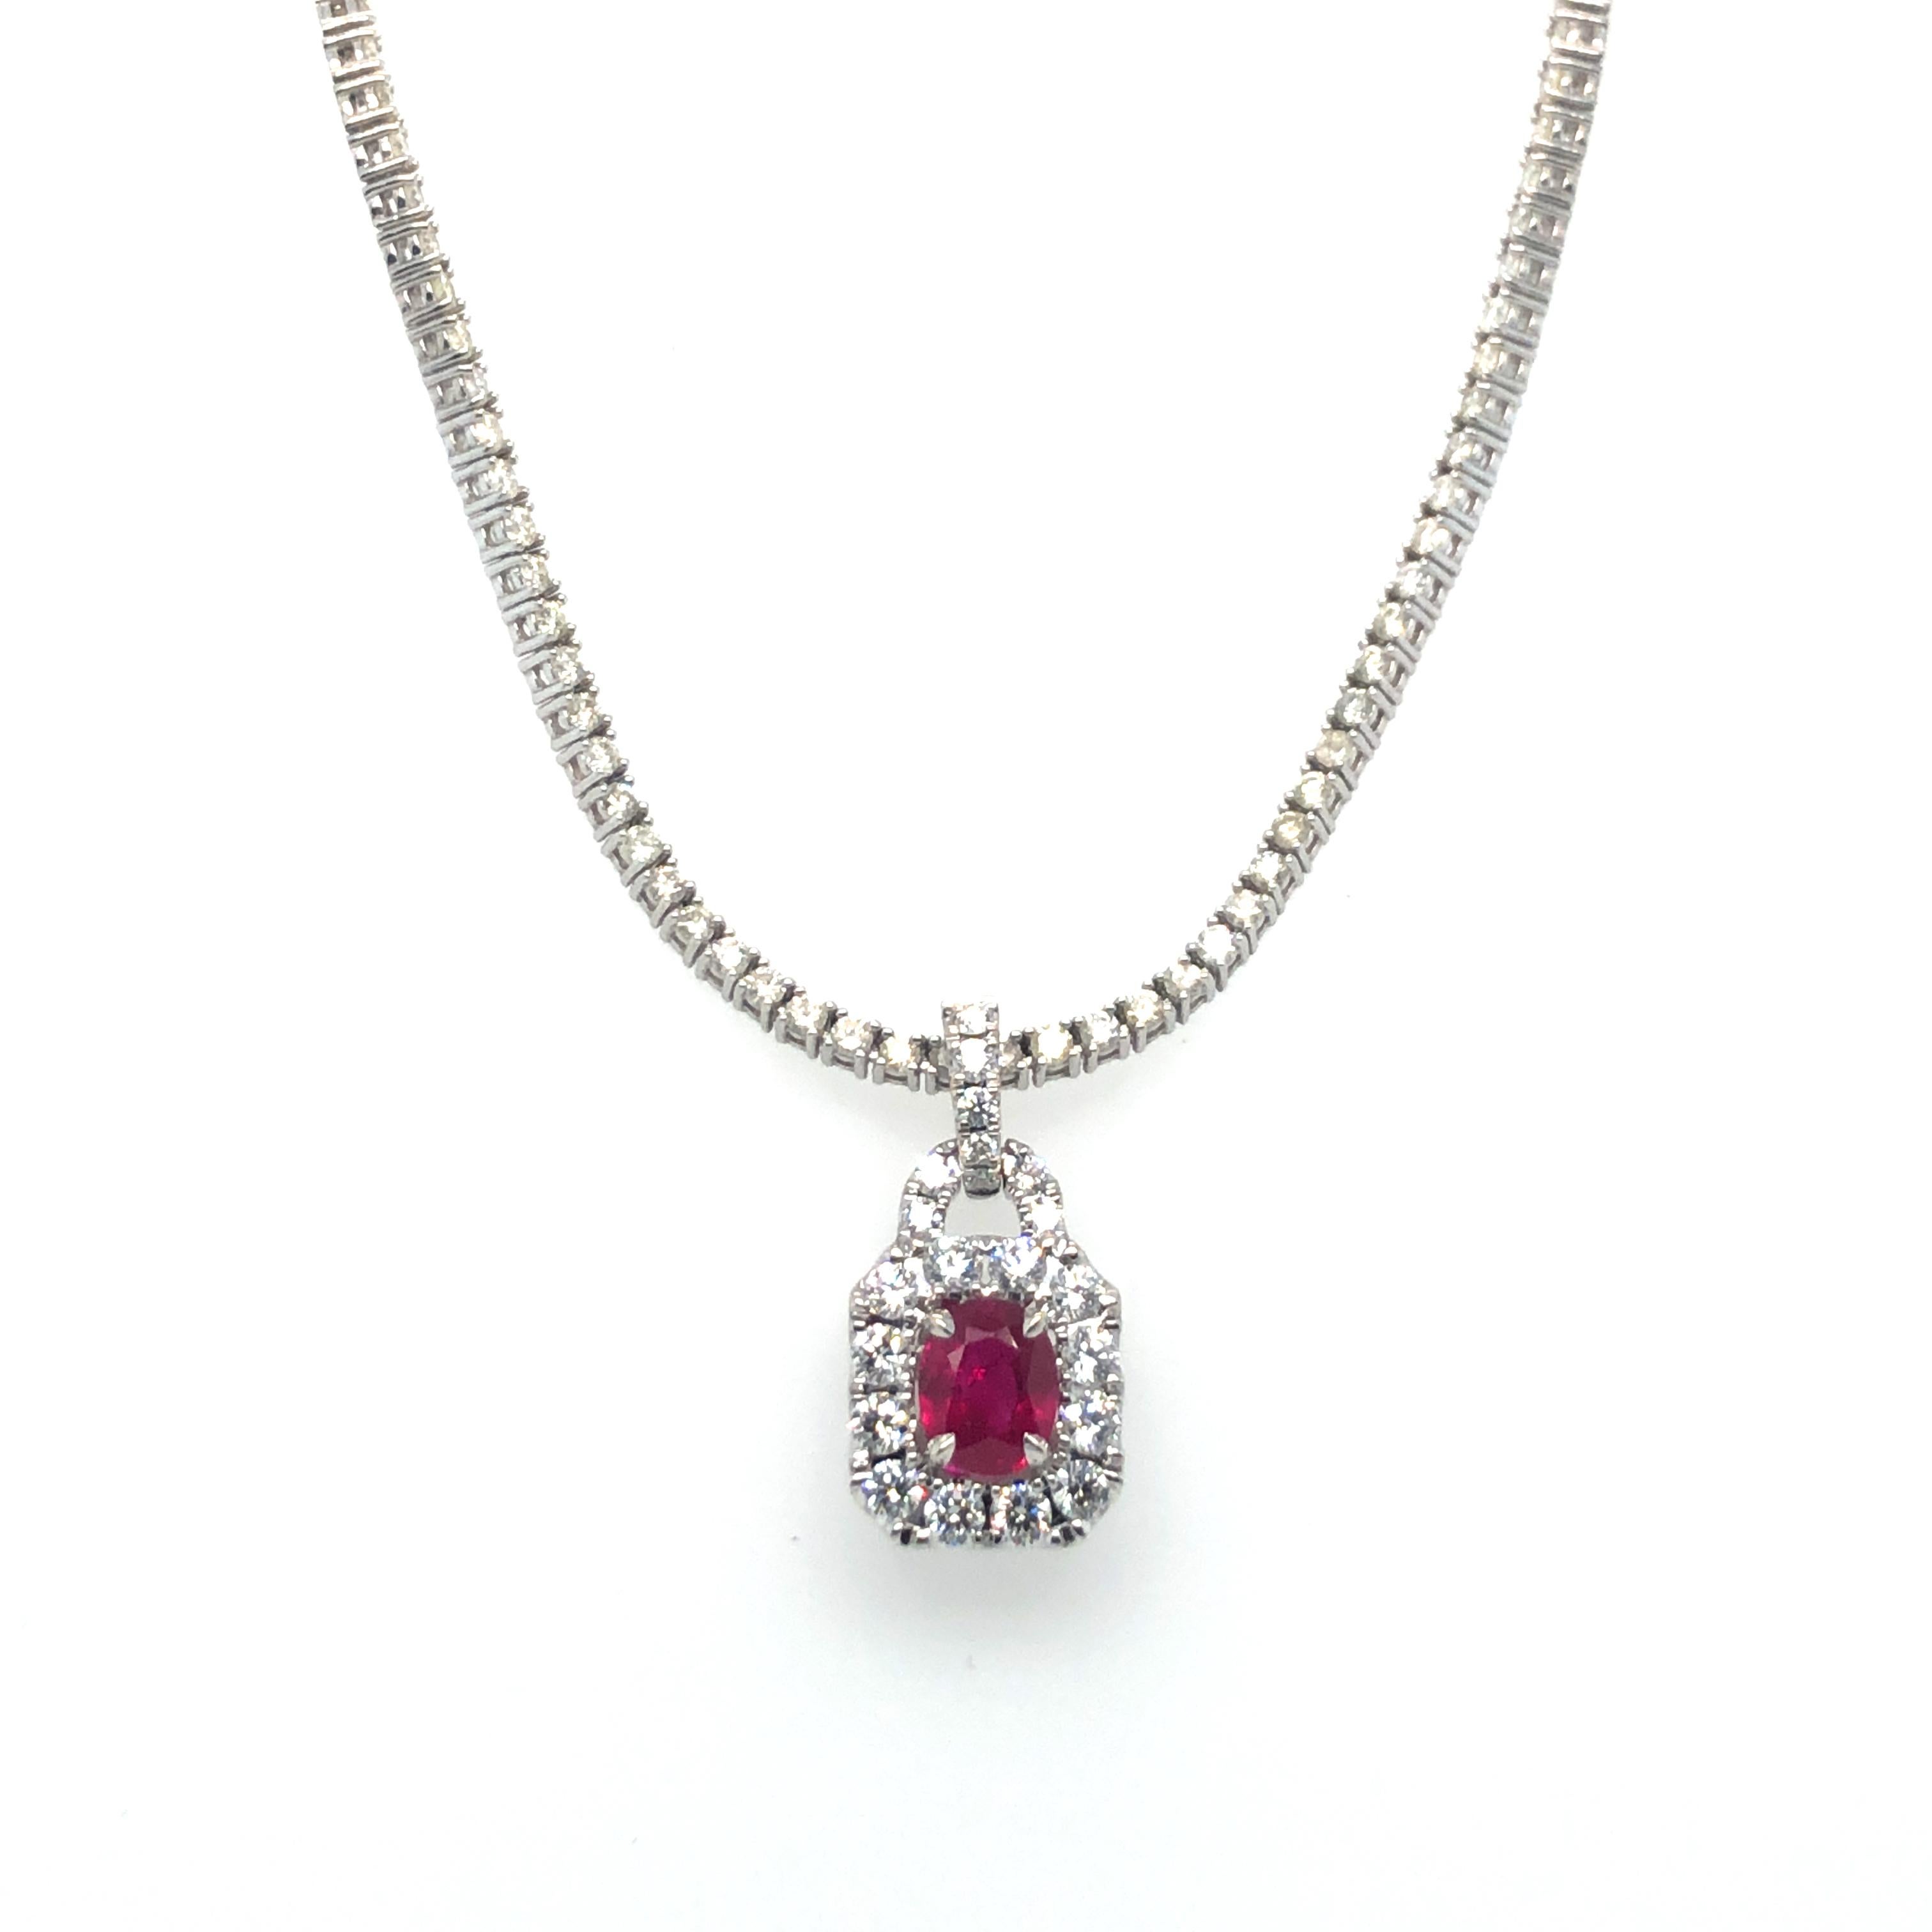 Collier Riviera à pendentifs en rubis et diamants en or blanc 18 carats. Le pendentif est orné d'un rubis ovale d'environ 1 carat,  accentué par un halo de diamants ronds de taille brillante. Le collier a une longueur de 18 pouces et une largeur de